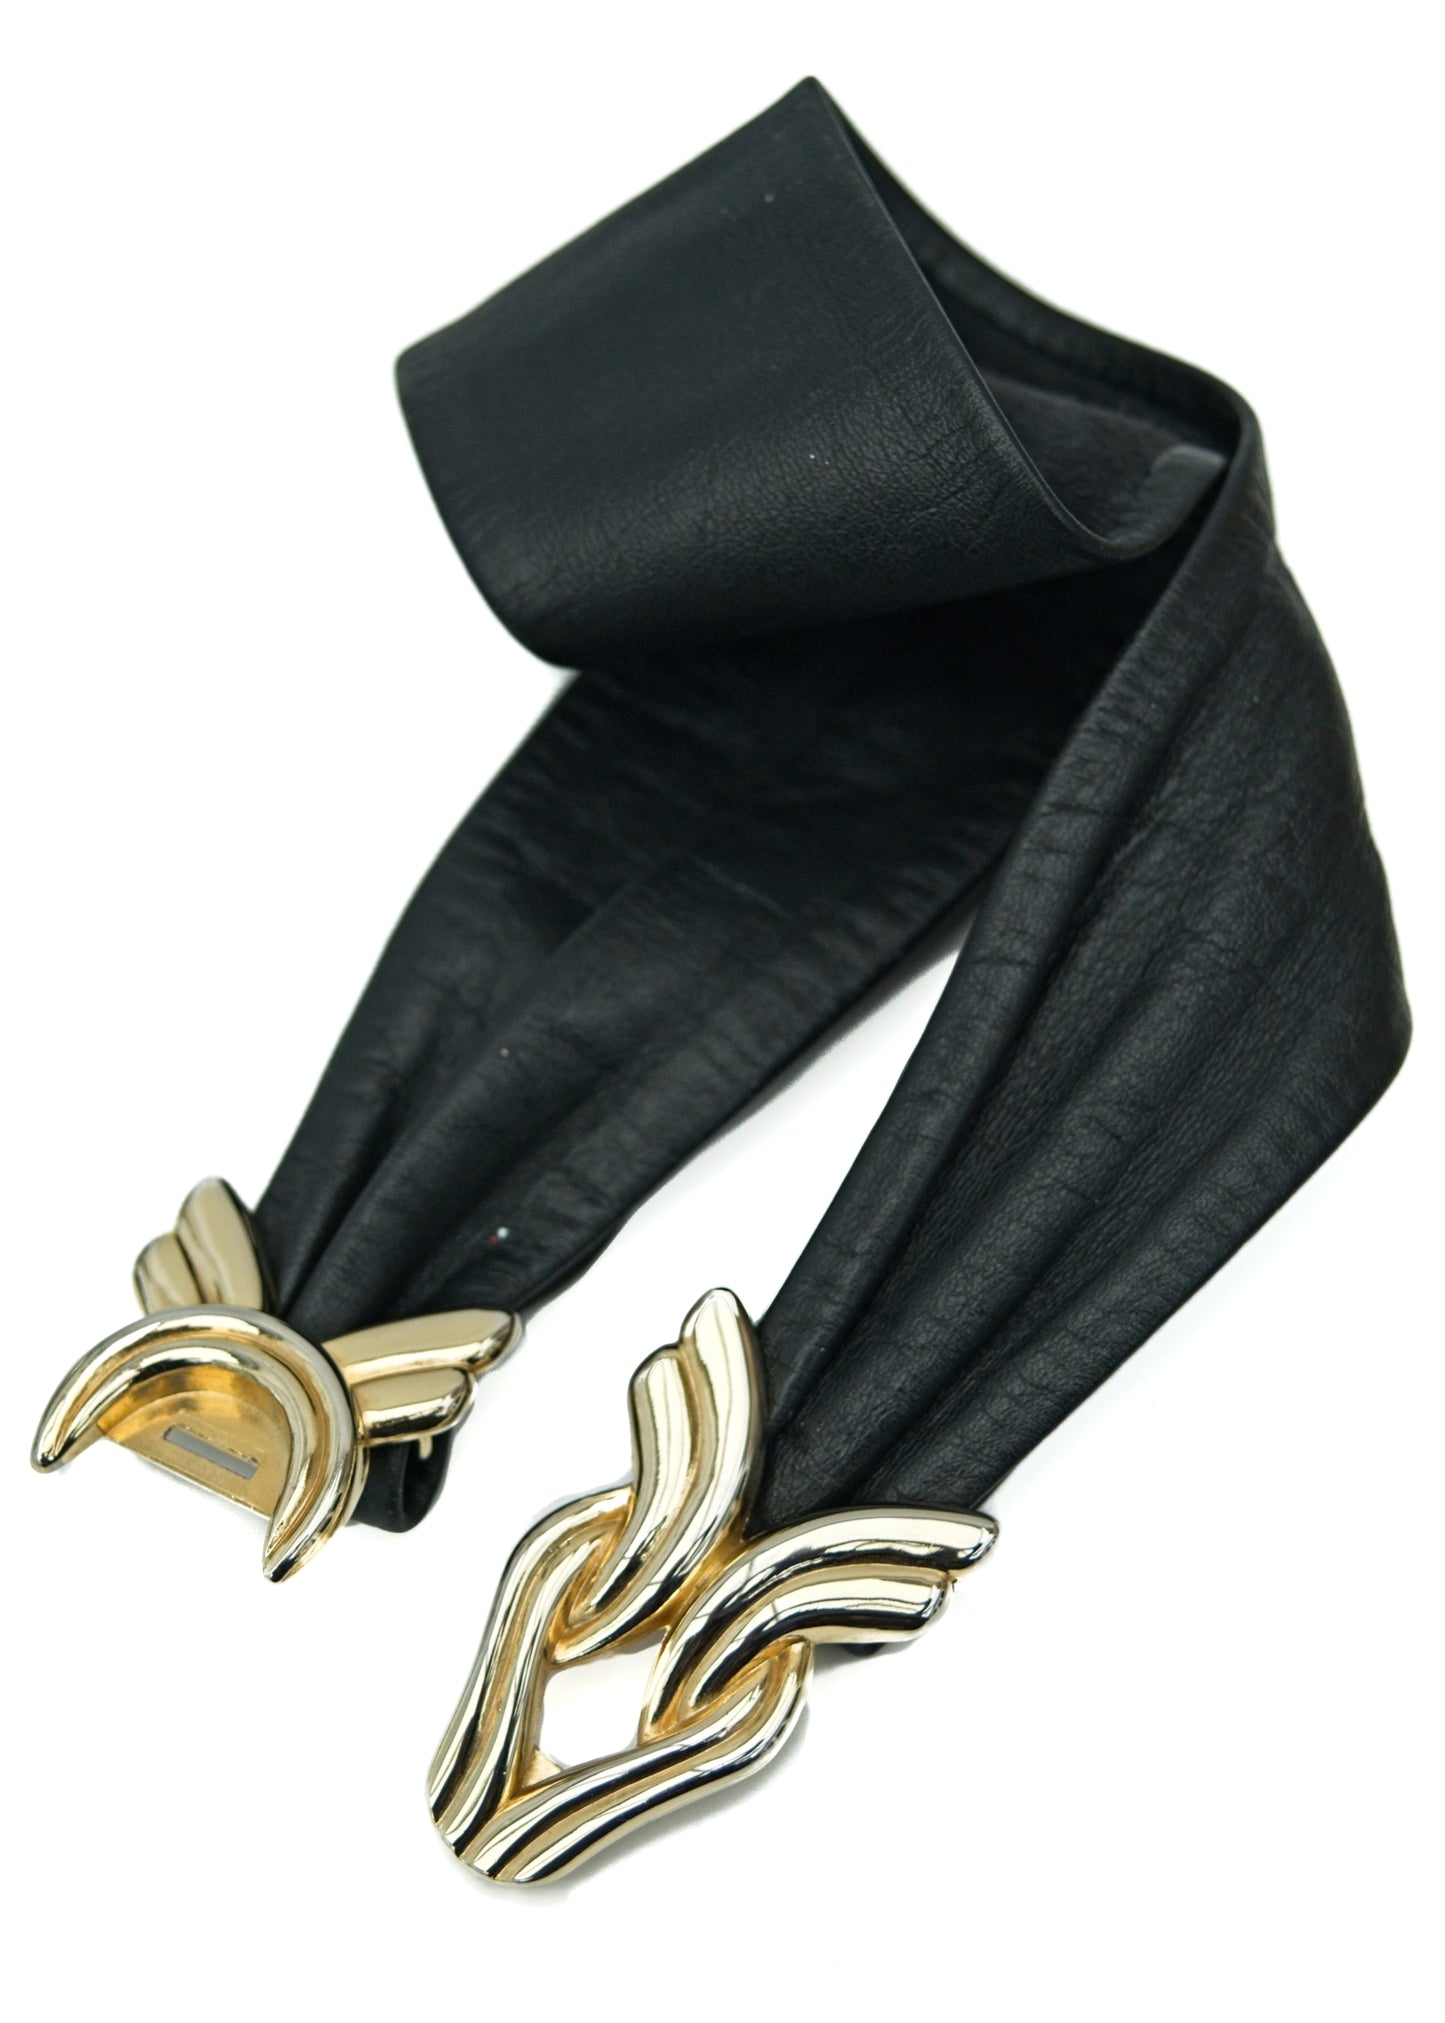 Vintage Leather Cincher Belt with Goldtone Buckle • Adjustable